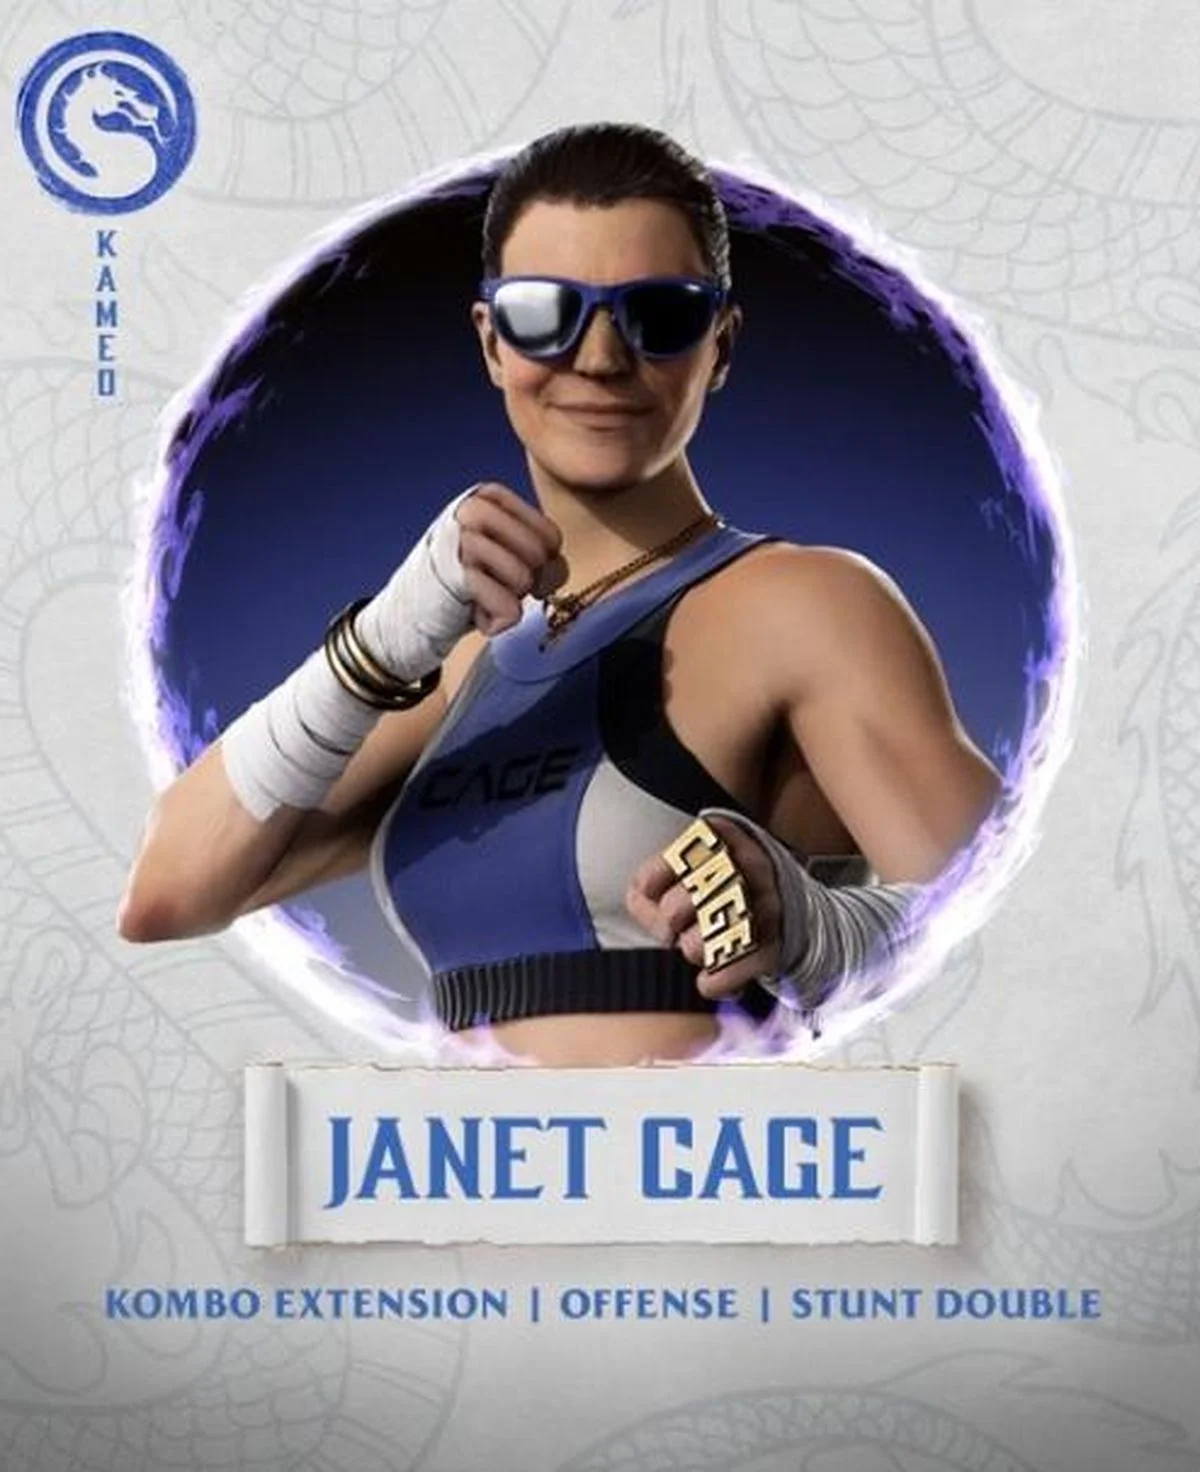 Джанет Кейдж появится в Mortal Kombat 1 27 марта - фото 1